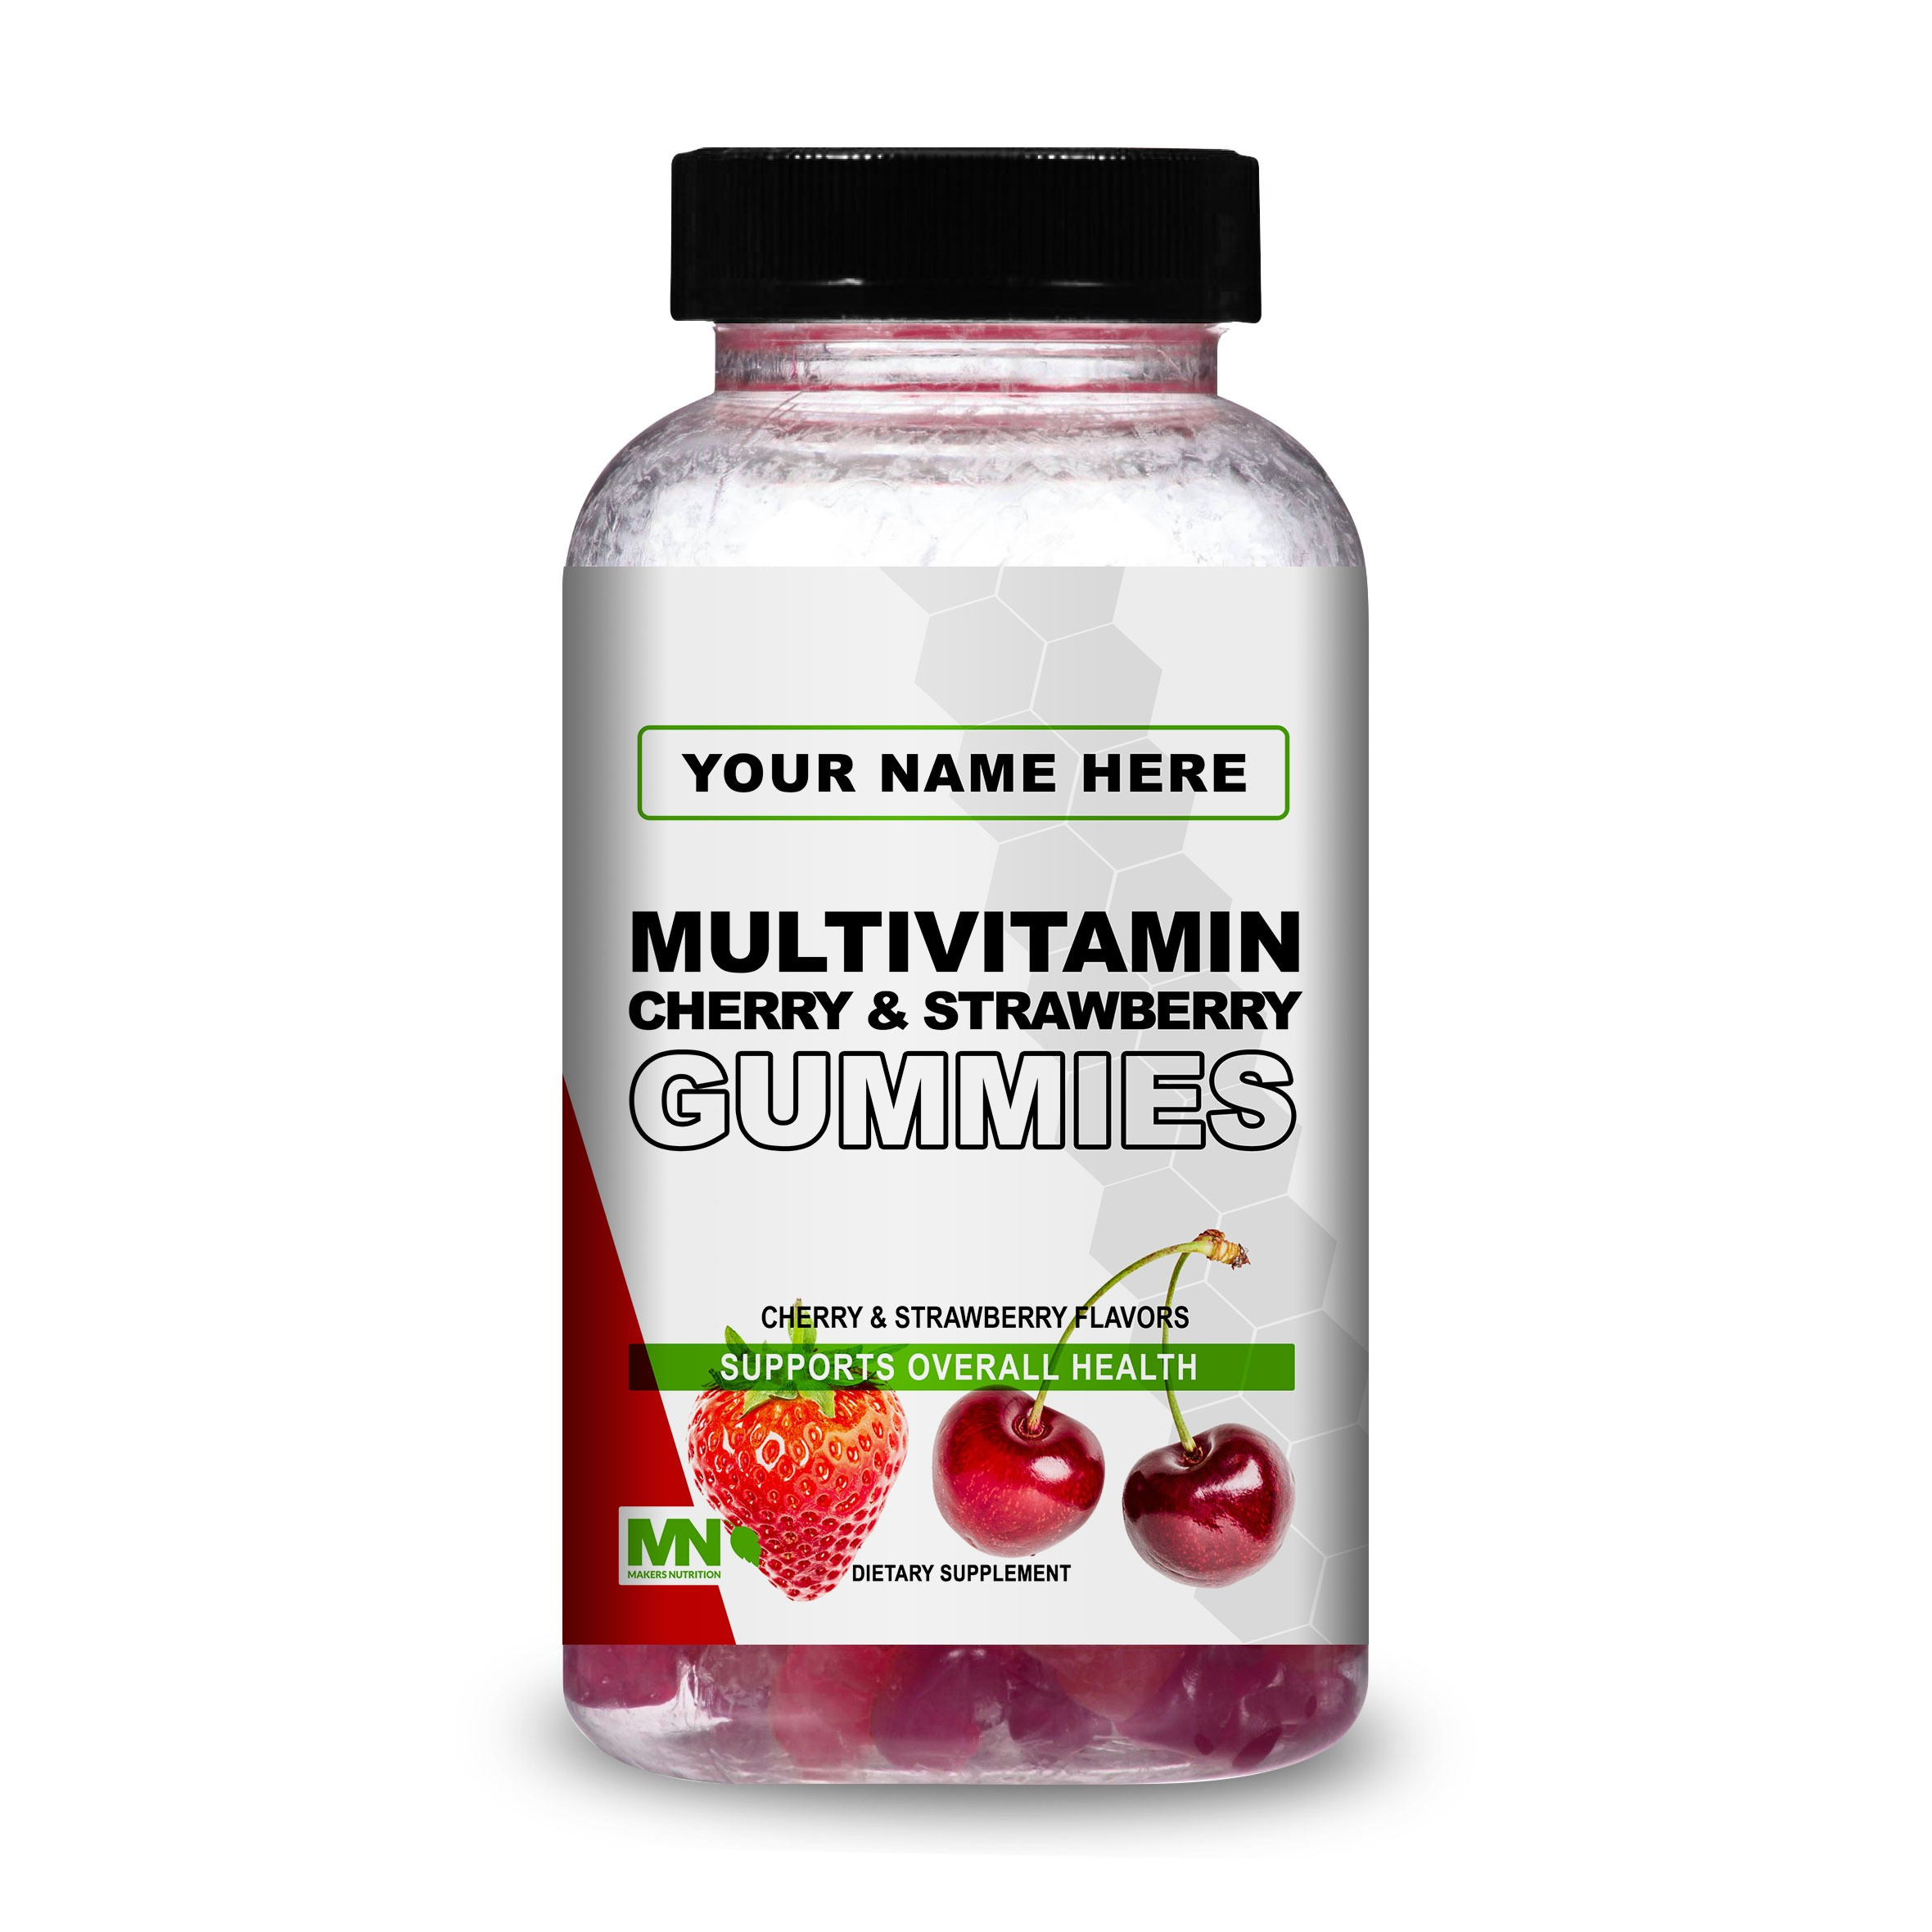 Multivitamin Cherry & Strawberry Gummies